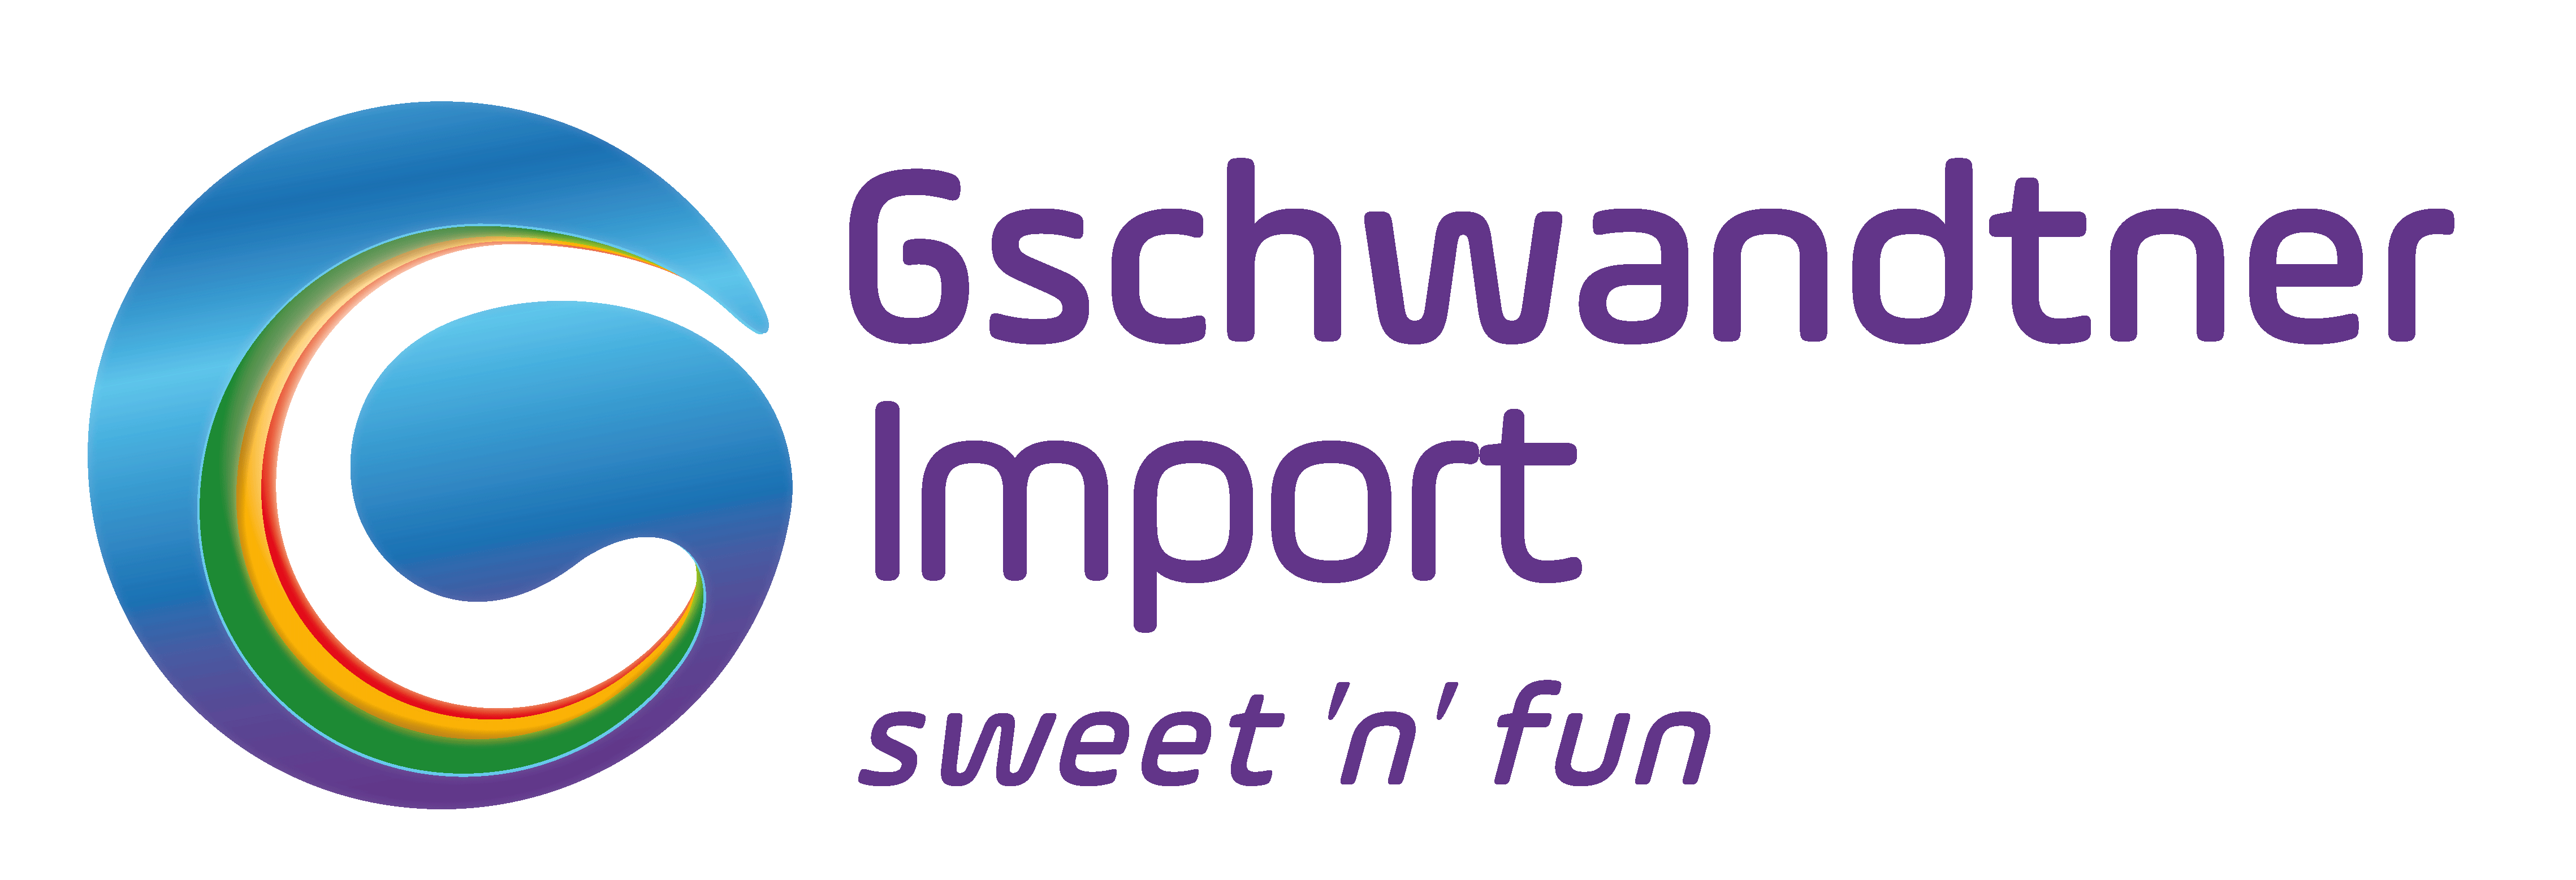 Logo Gschwandtner